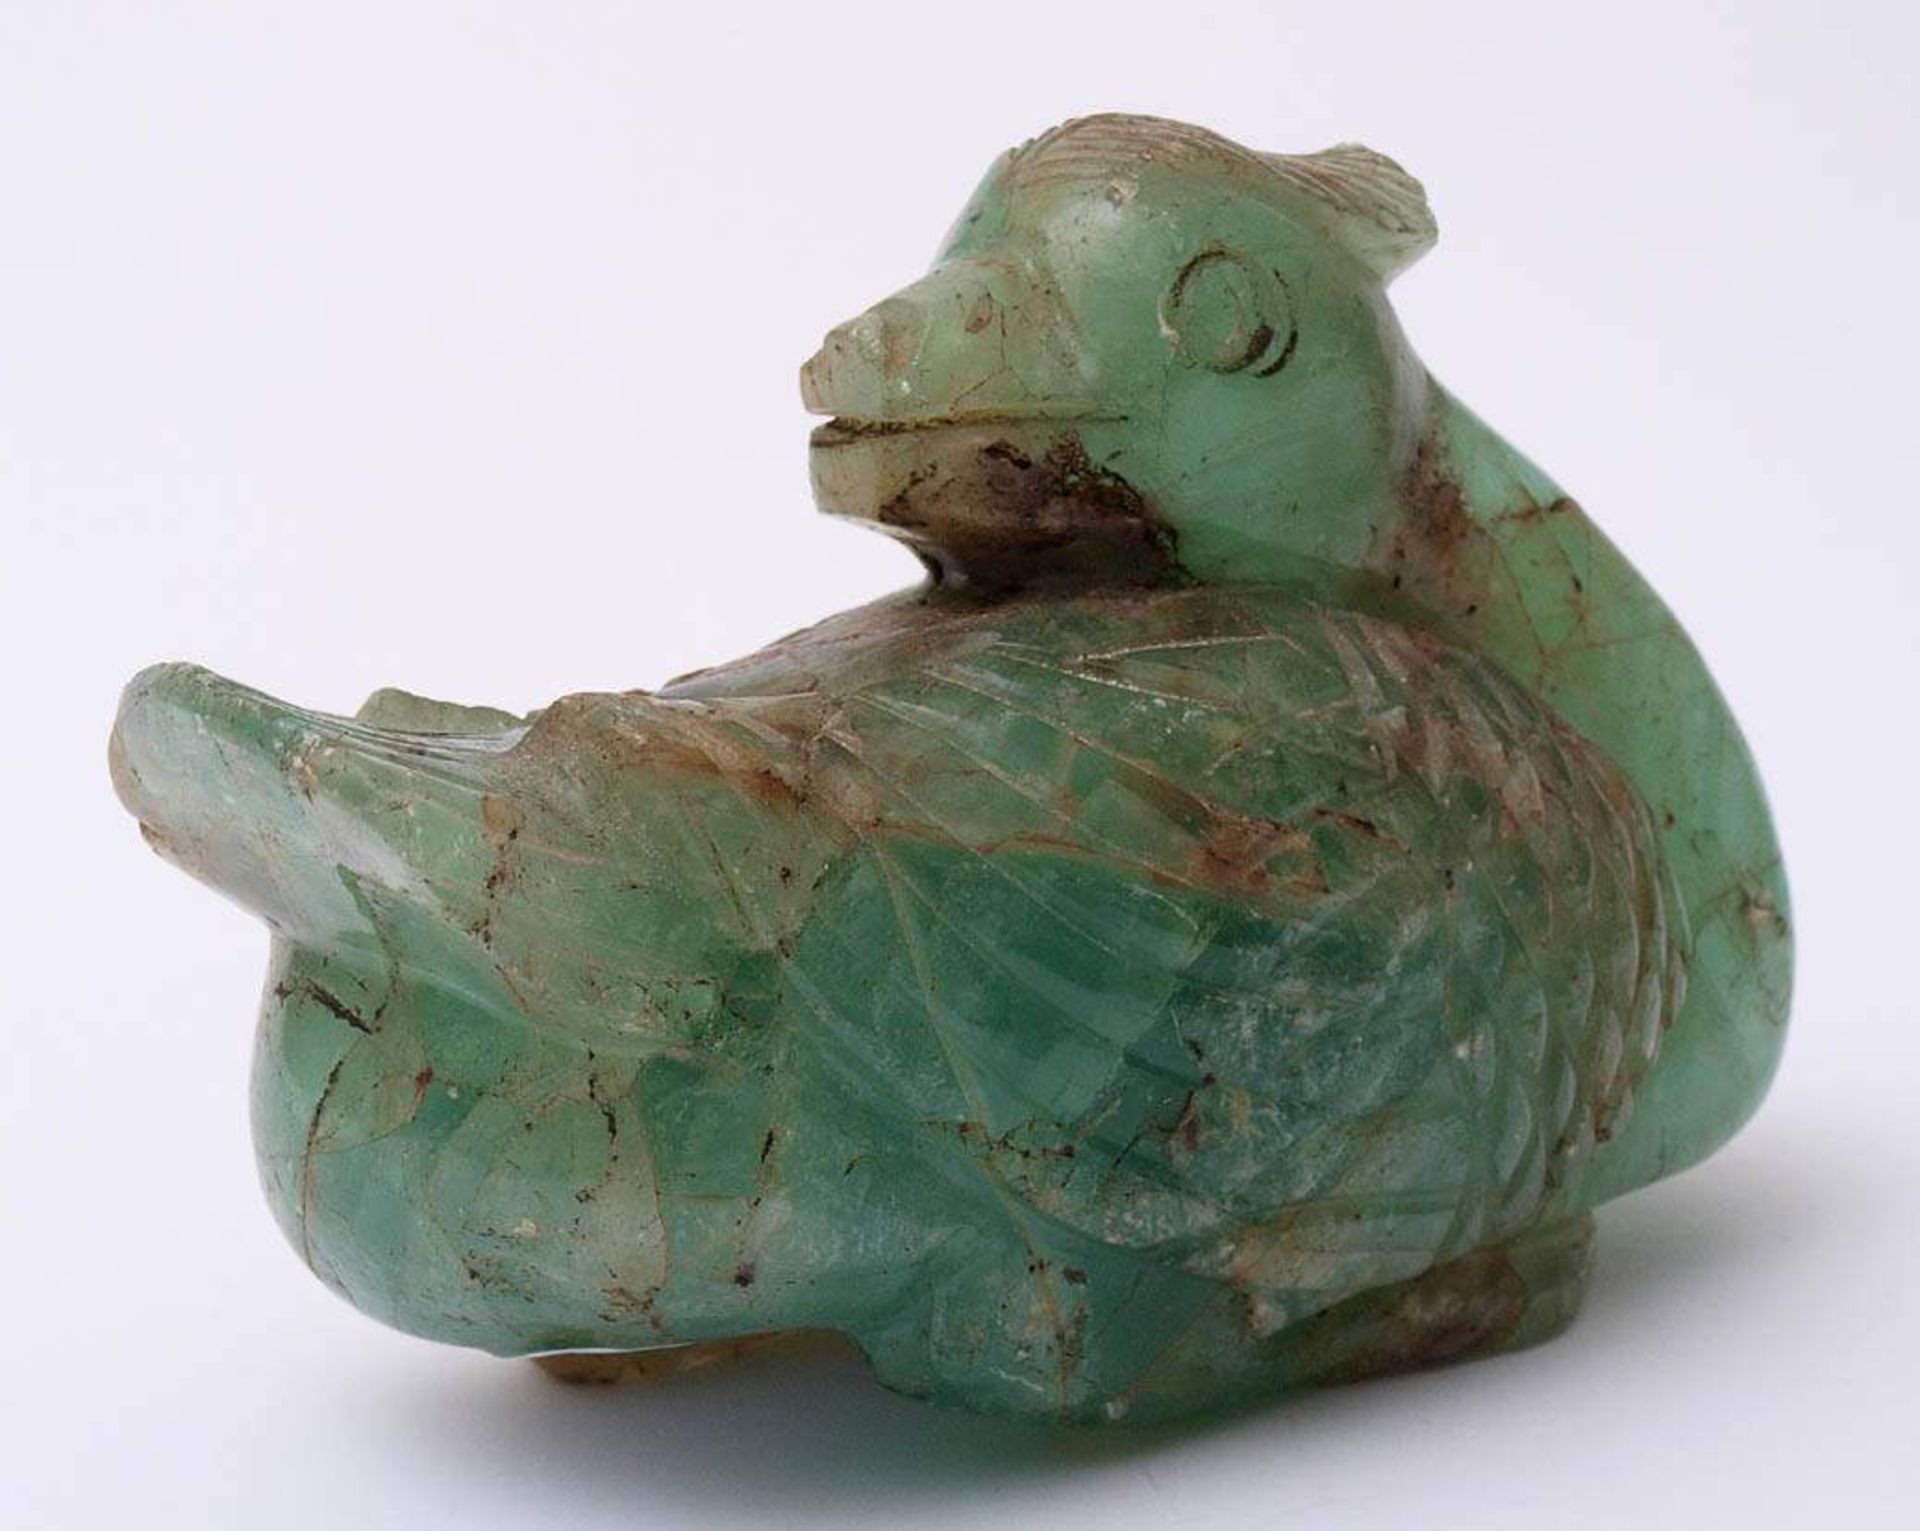 Tierfigurine, China, 19.Jhdt.Sitzender Vogel. Grün durchschimmernder Halbedelstein. L.13,5cm. - Bild 2 aus 3